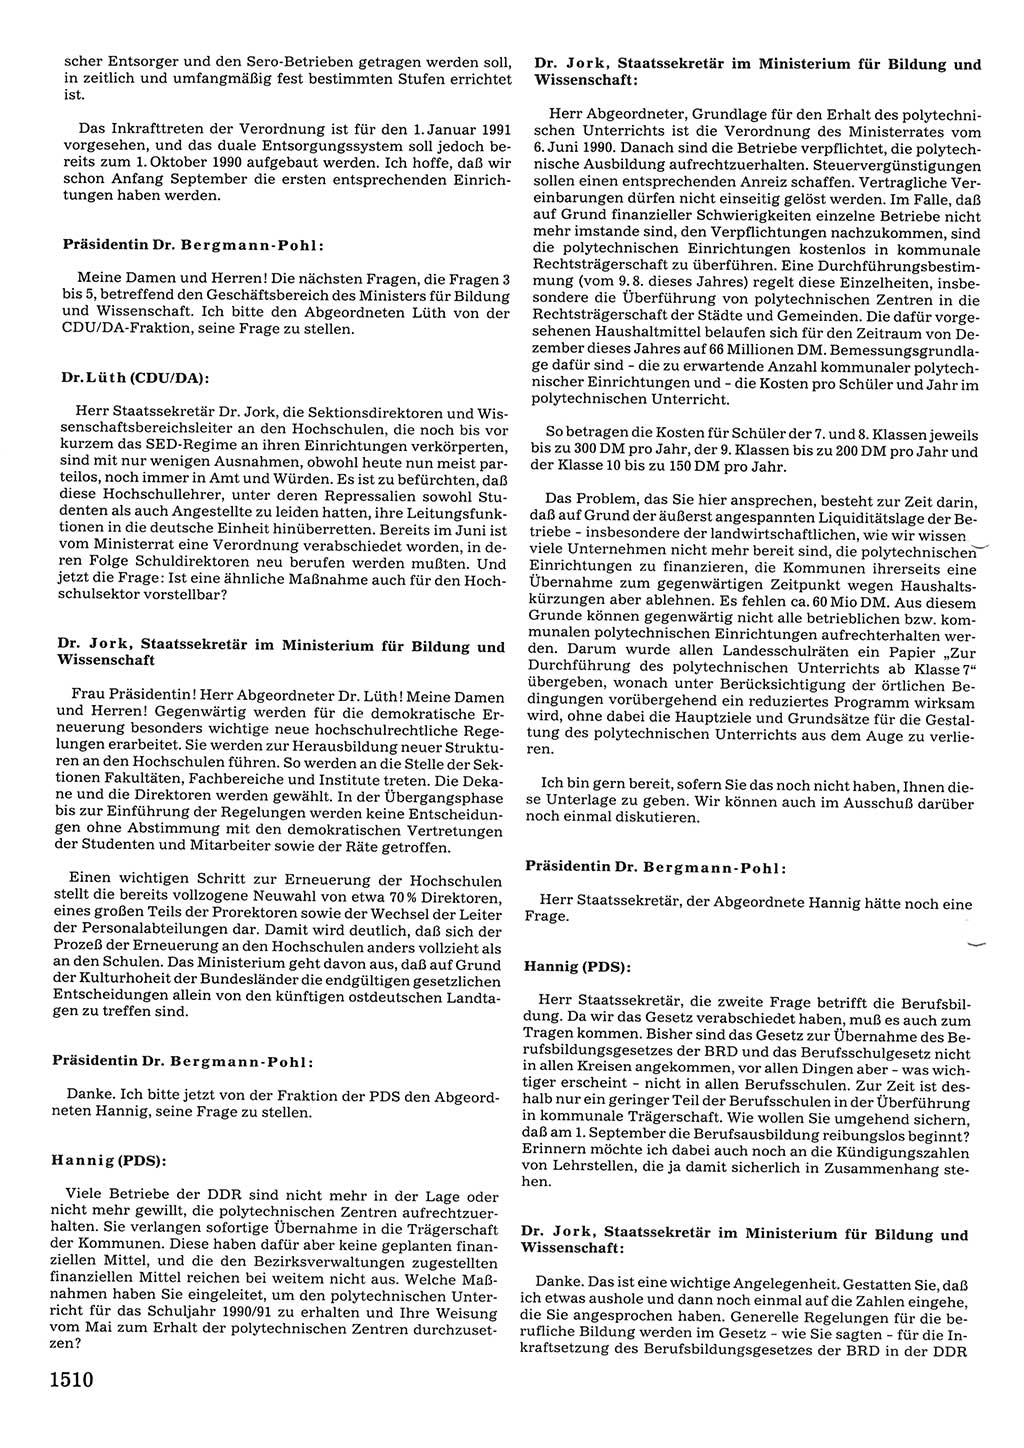 Tagungen der Volkskammer (VK) der Deutschen Demokratischen Republik (DDR), 10. Wahlperiode 1990, Seite 1510 (VK. DDR 10. WP. 1990, Prot. Tg. 1-38, 5.4.-2.10.1990, S. 1510)